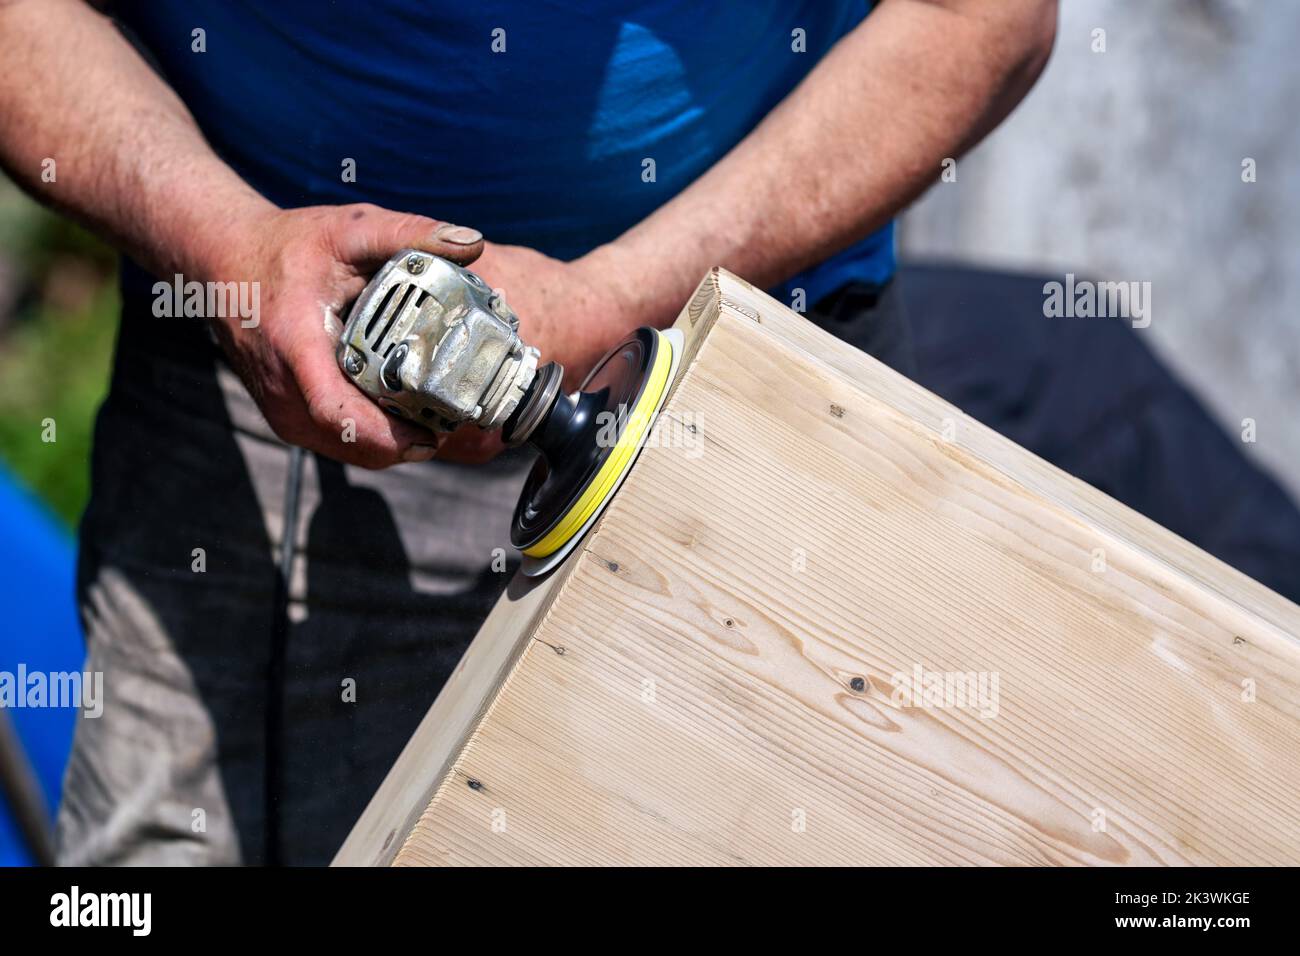 Mann polieren Holzkiste mit alten Winkelschleifer während sonnigen Tag, Nahaufnahme Detail Hände ohne Handschuhe Stockfoto